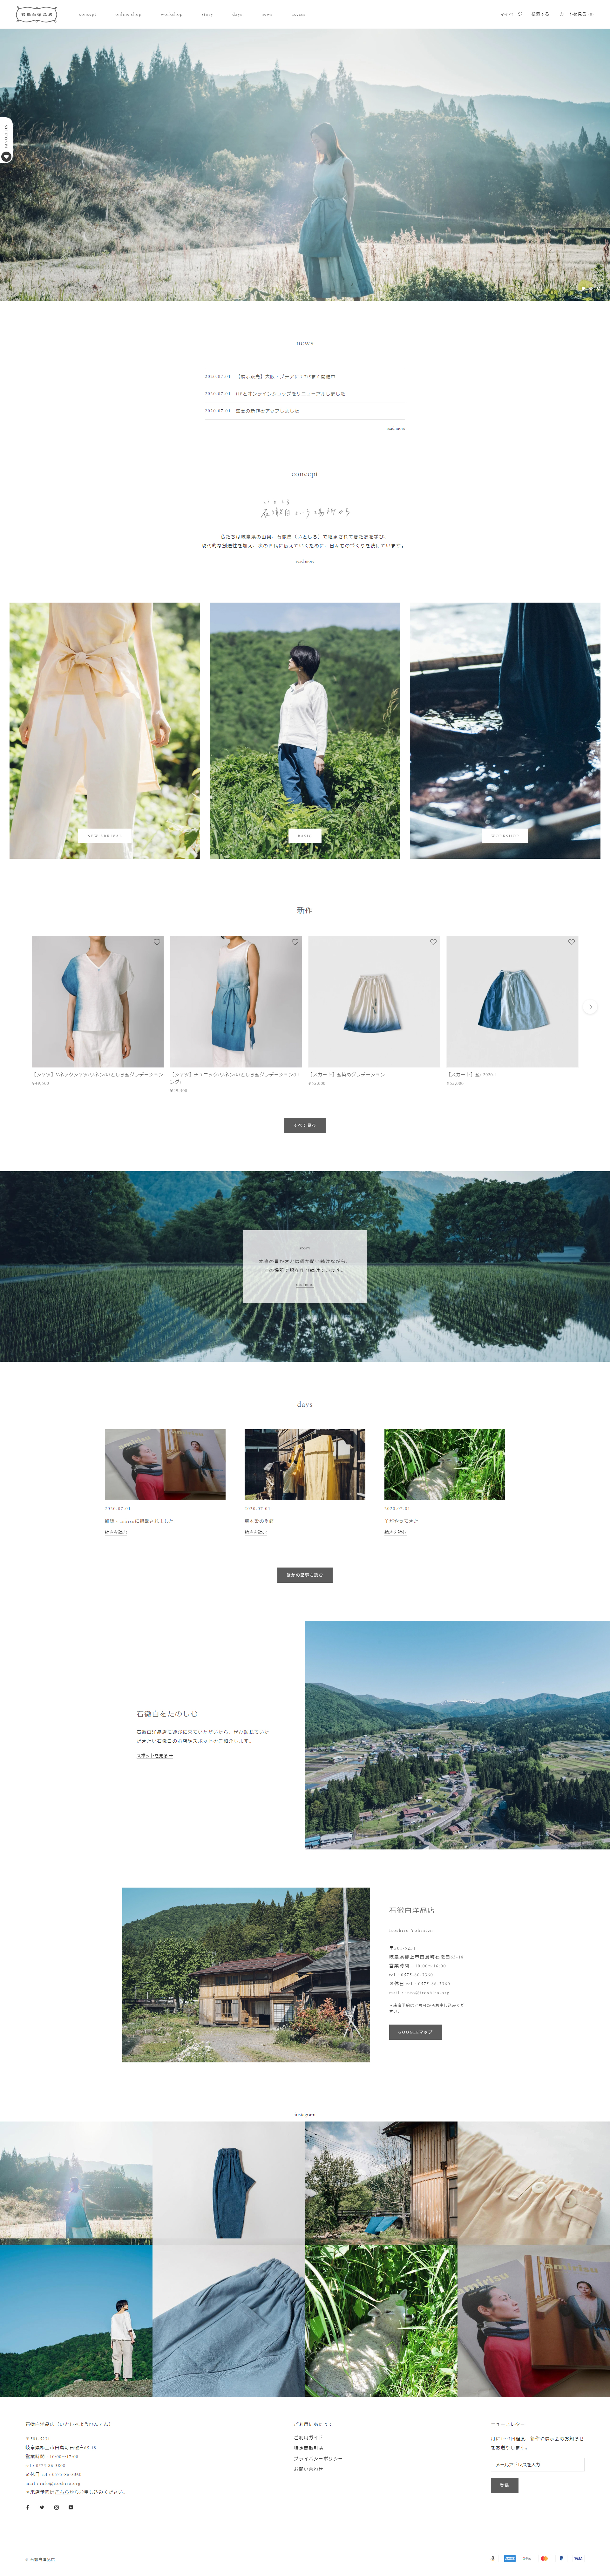 服装行业网页设计